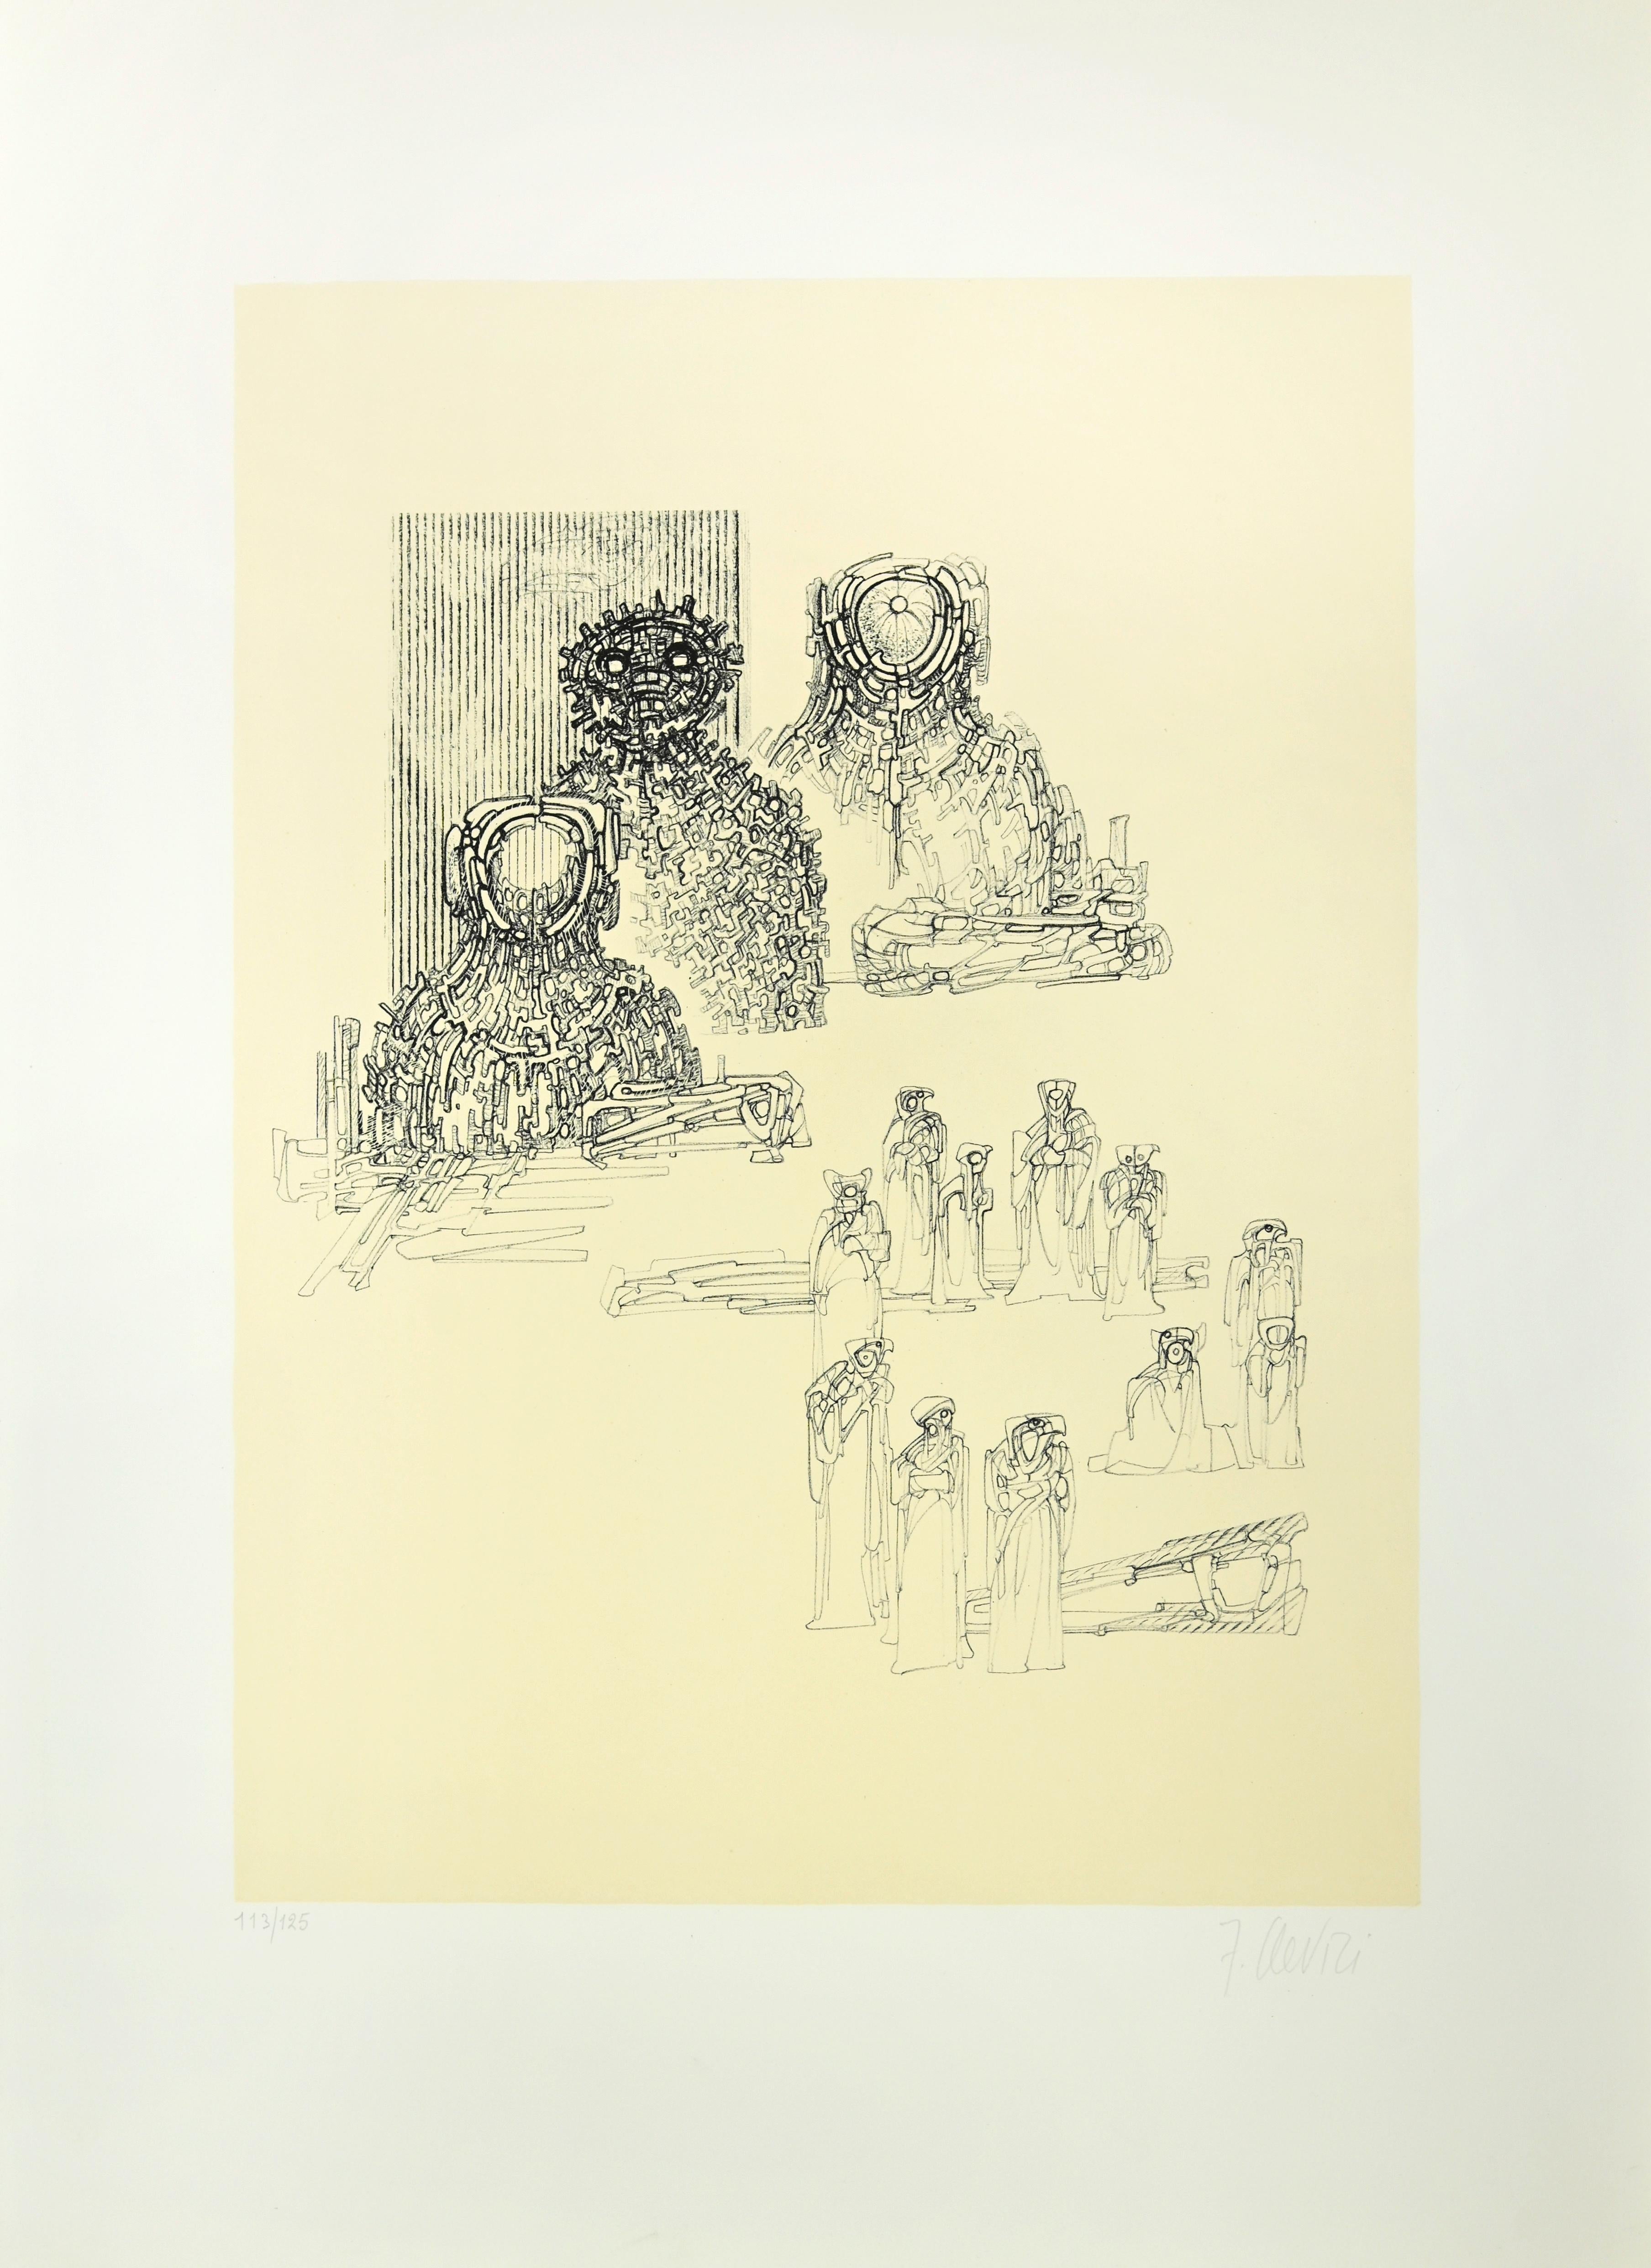 Gestische Komposition ist ein Druck, den Fabrizio Clerici in den 1970er Jahren realisiert hat.

Lithographie auf Papier.

Handsigniert und nummeriert, Auflage: 125 Exemplare.

Das Kunstwerk wird durch eine Reihe von verschiedenen Brett- und